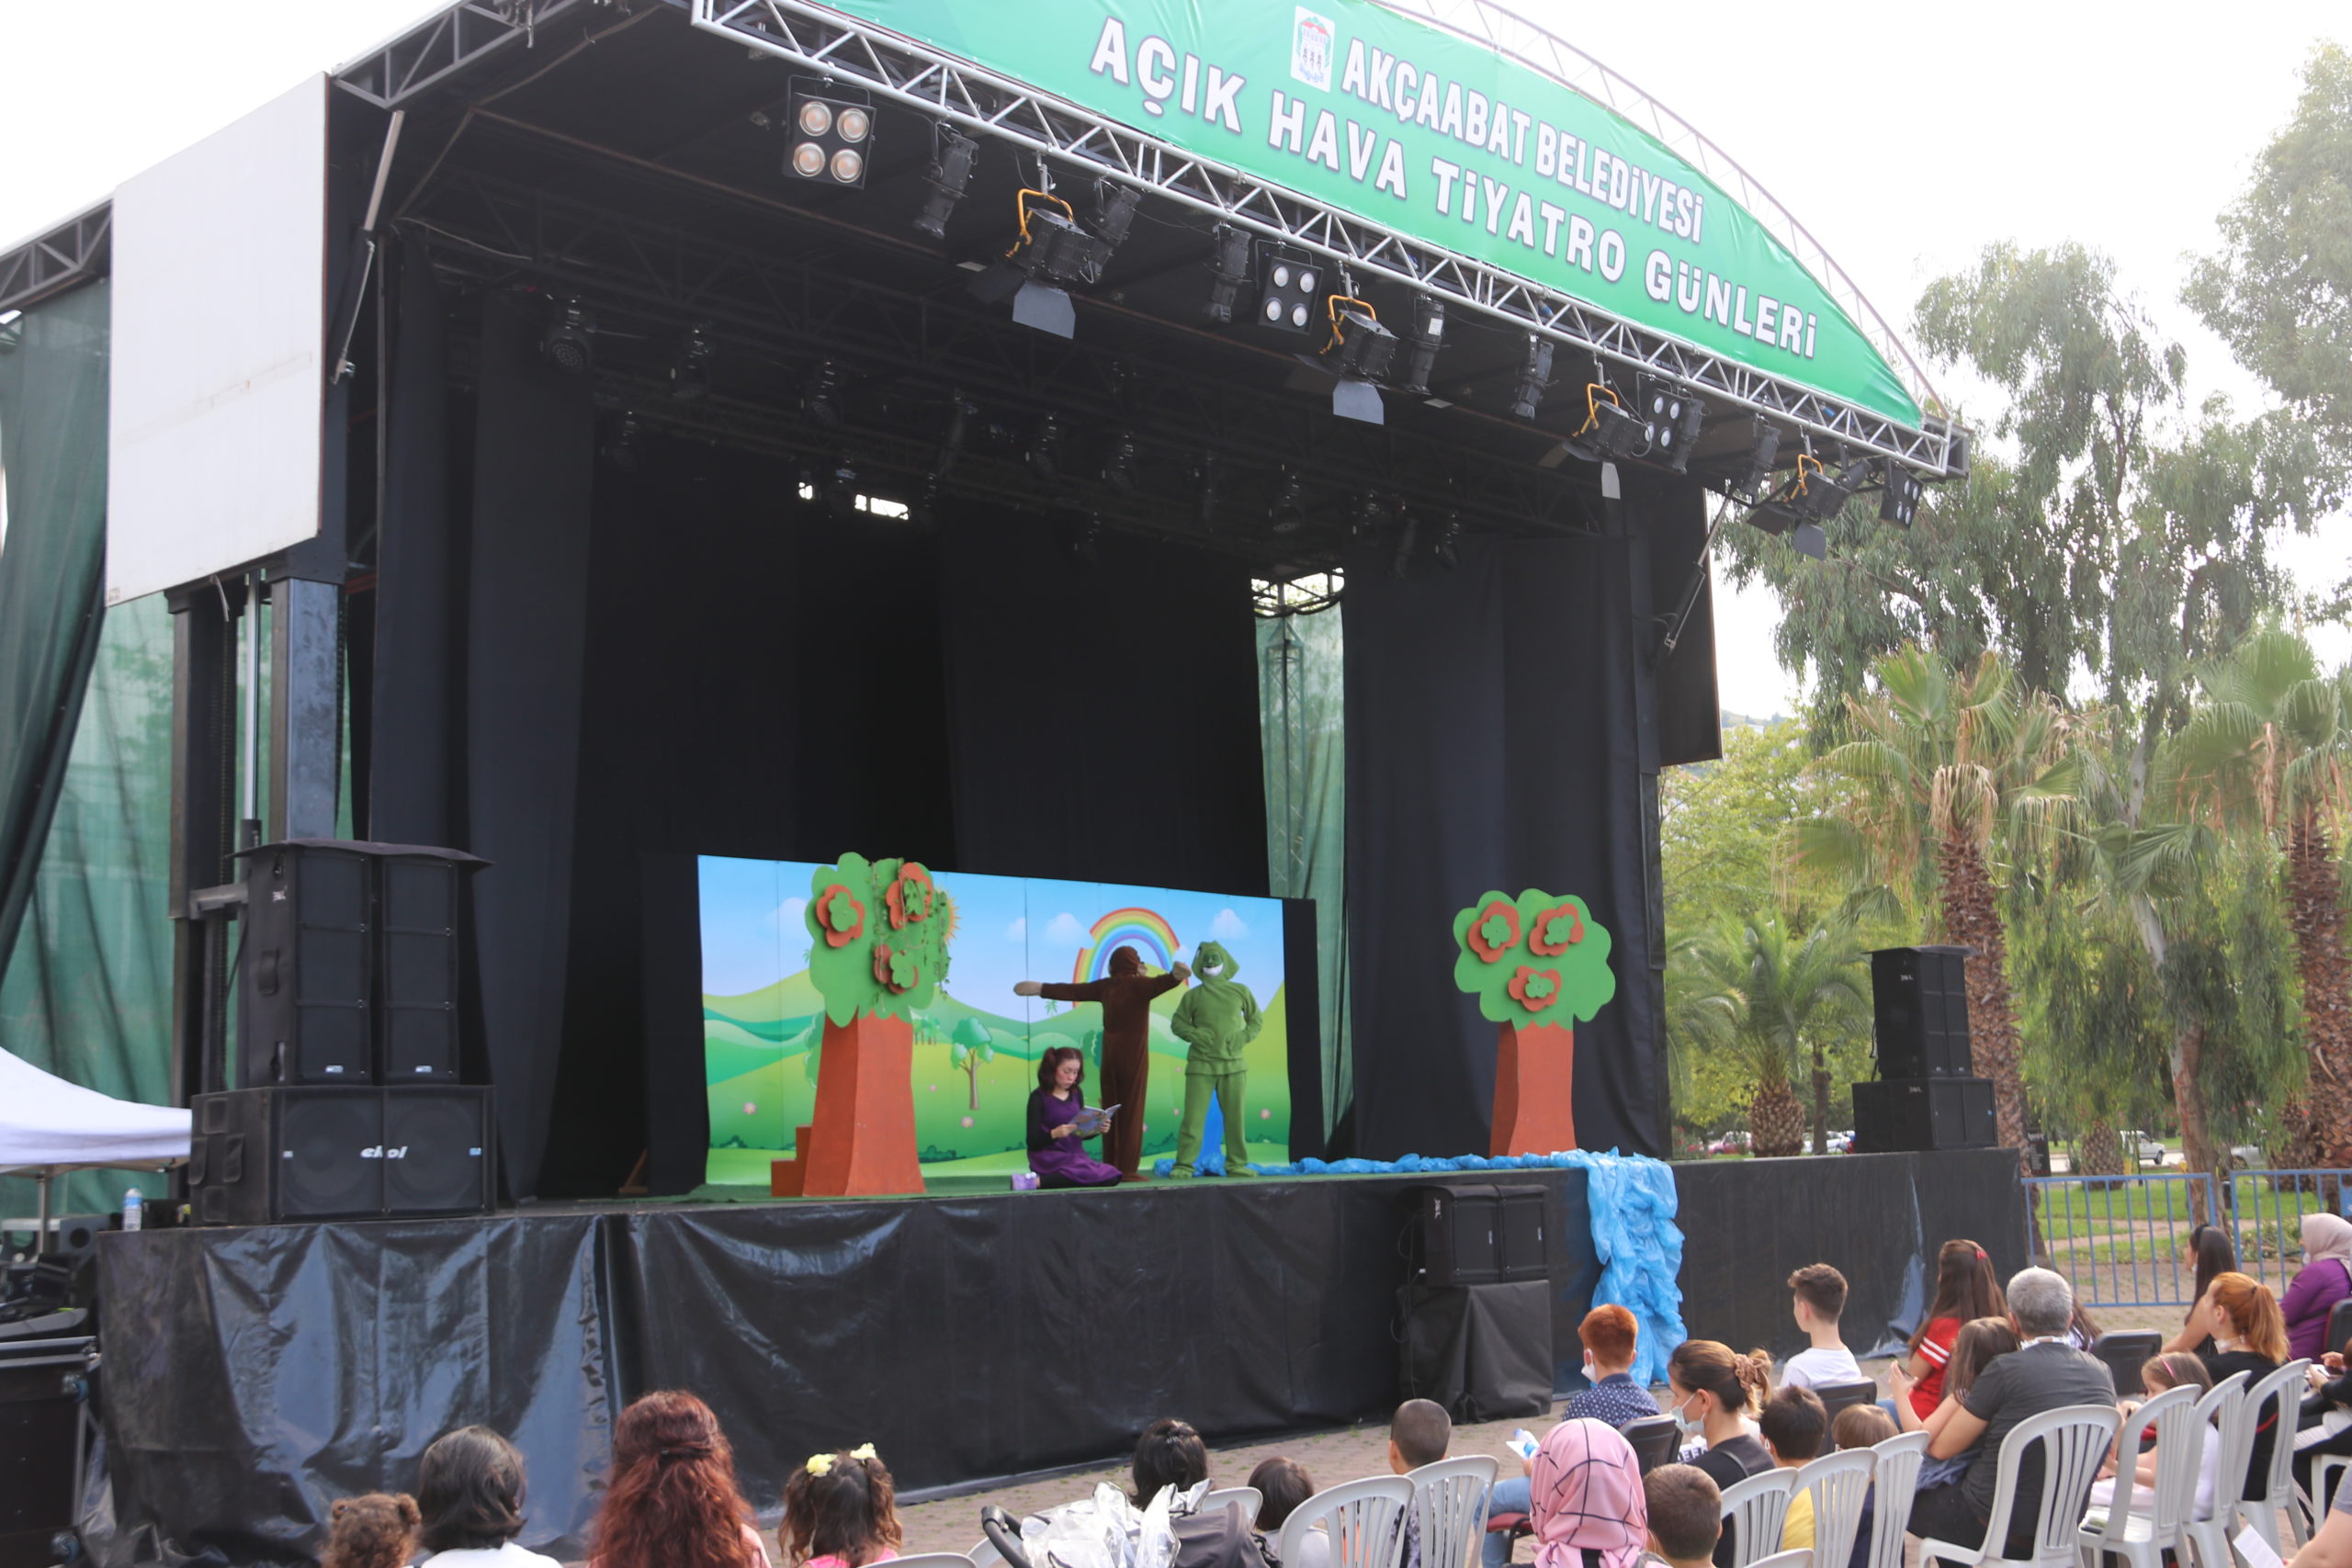  Akçaabat’da “İkinci Açık Hava Tiyatro Günleri” Düzenleniyor